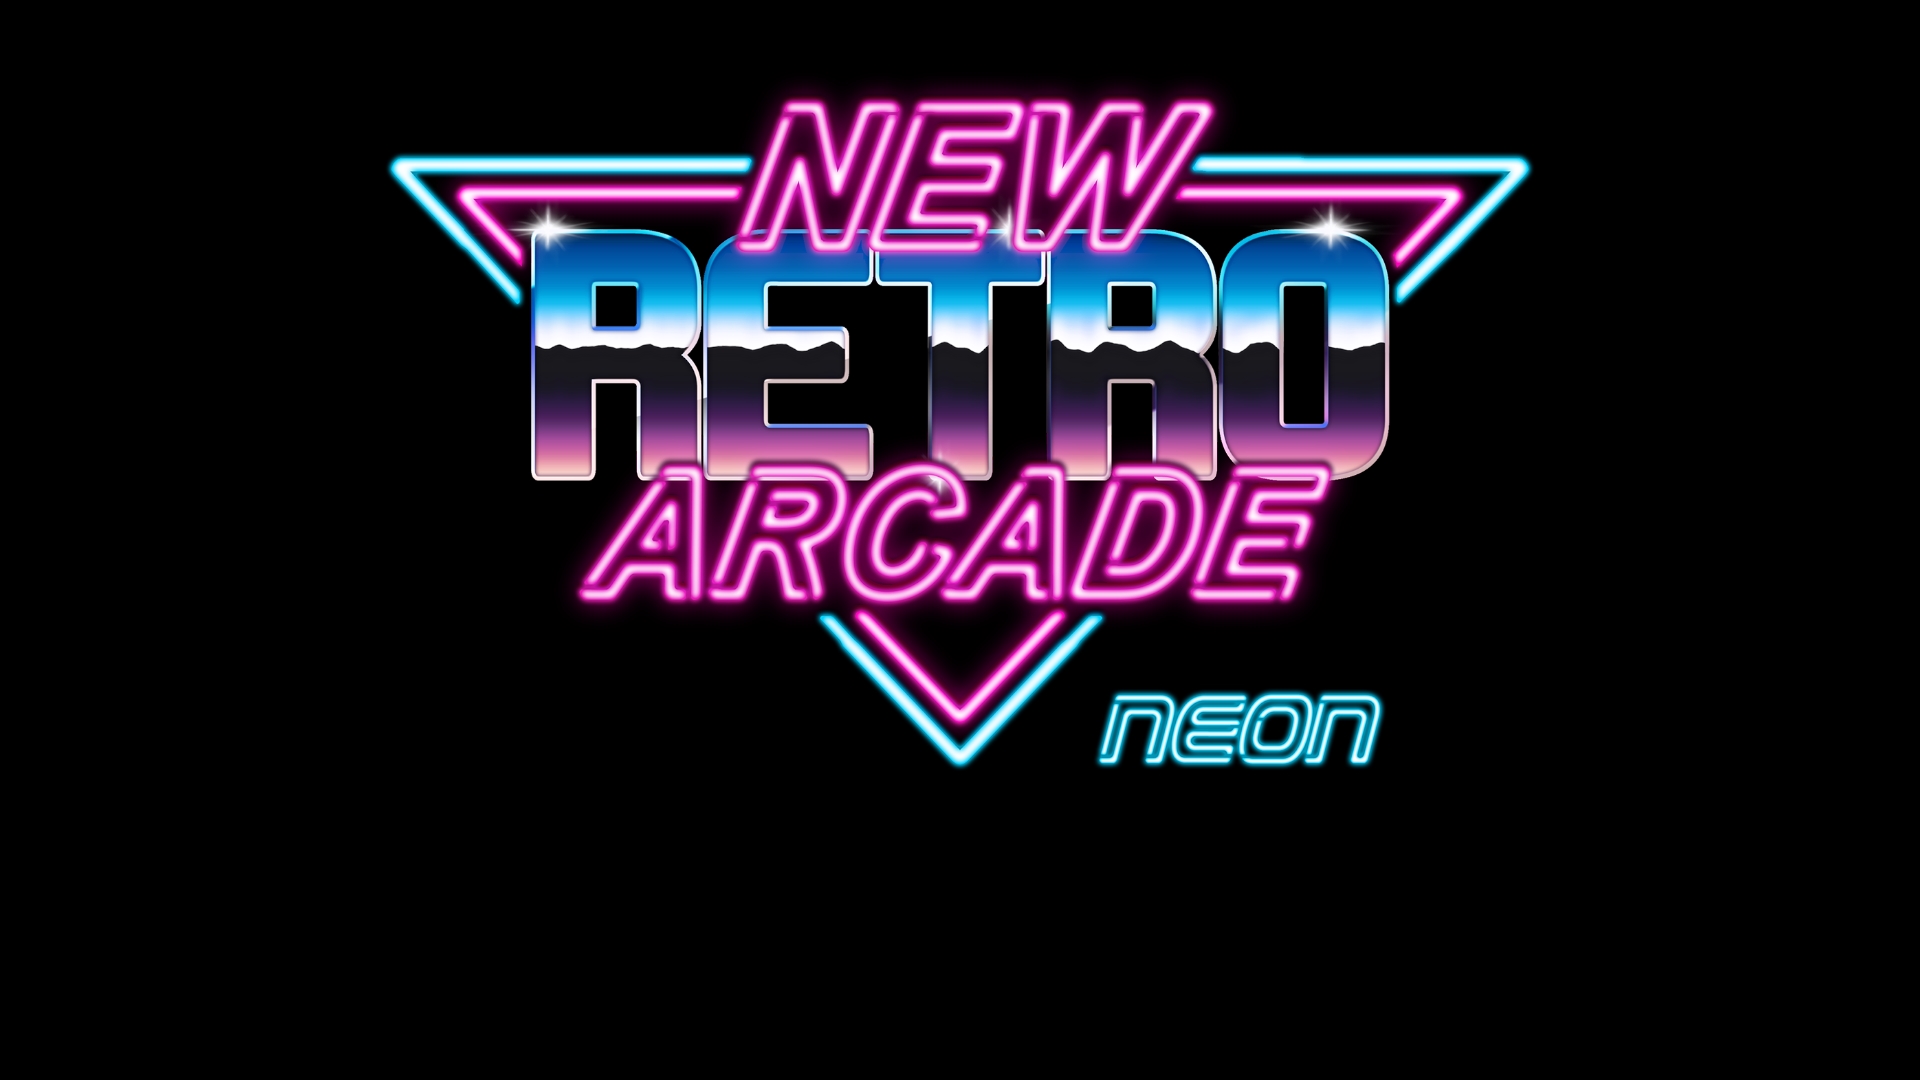 retro arcade station x review